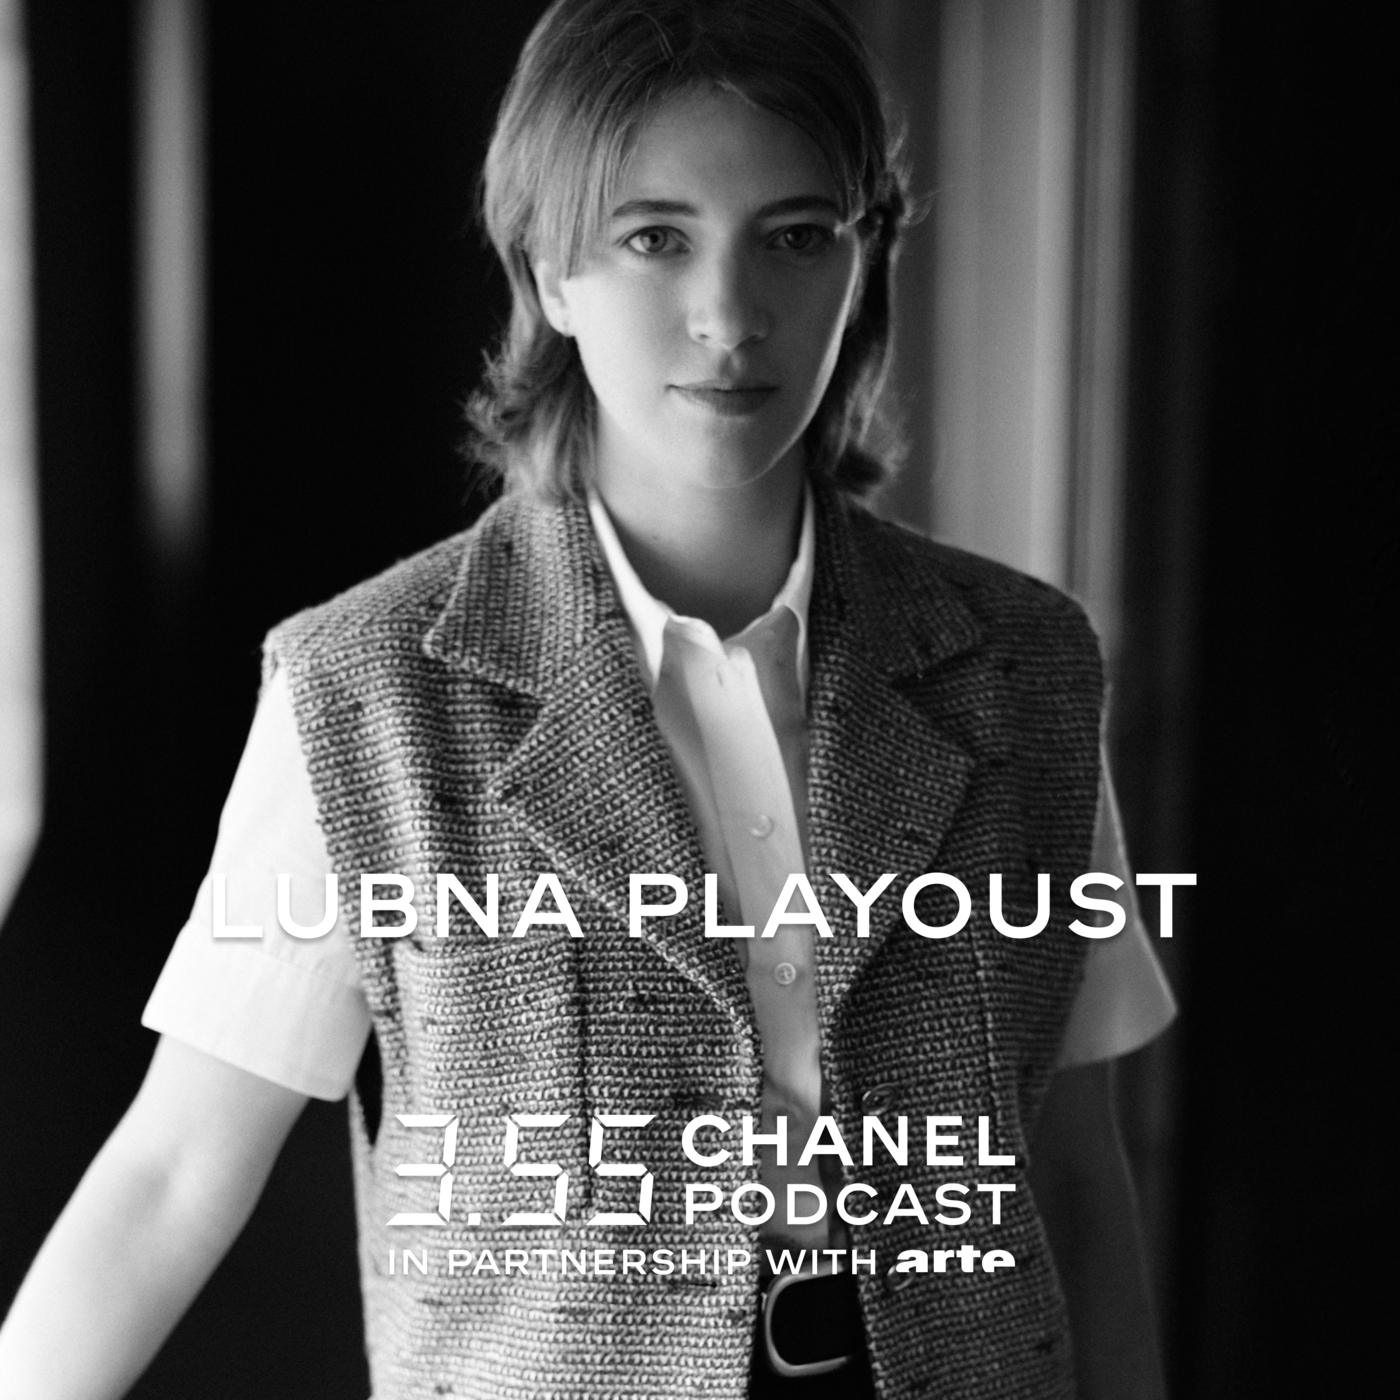 CHANEL à Cannes avec Lubna Playoust